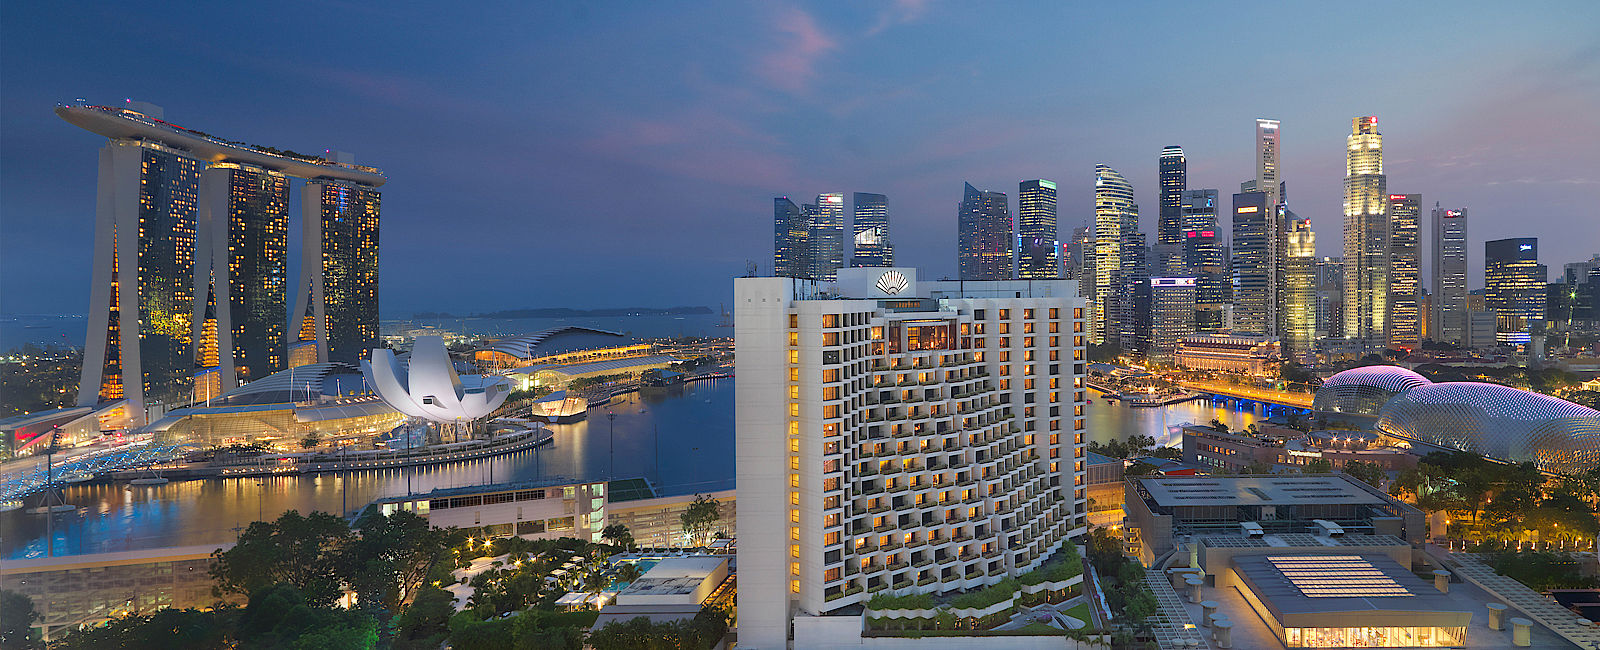 VERY SPECIAL HOTEL
 Mandarin Oriental Singapur 
 Mitten im Herzen von Lion City 